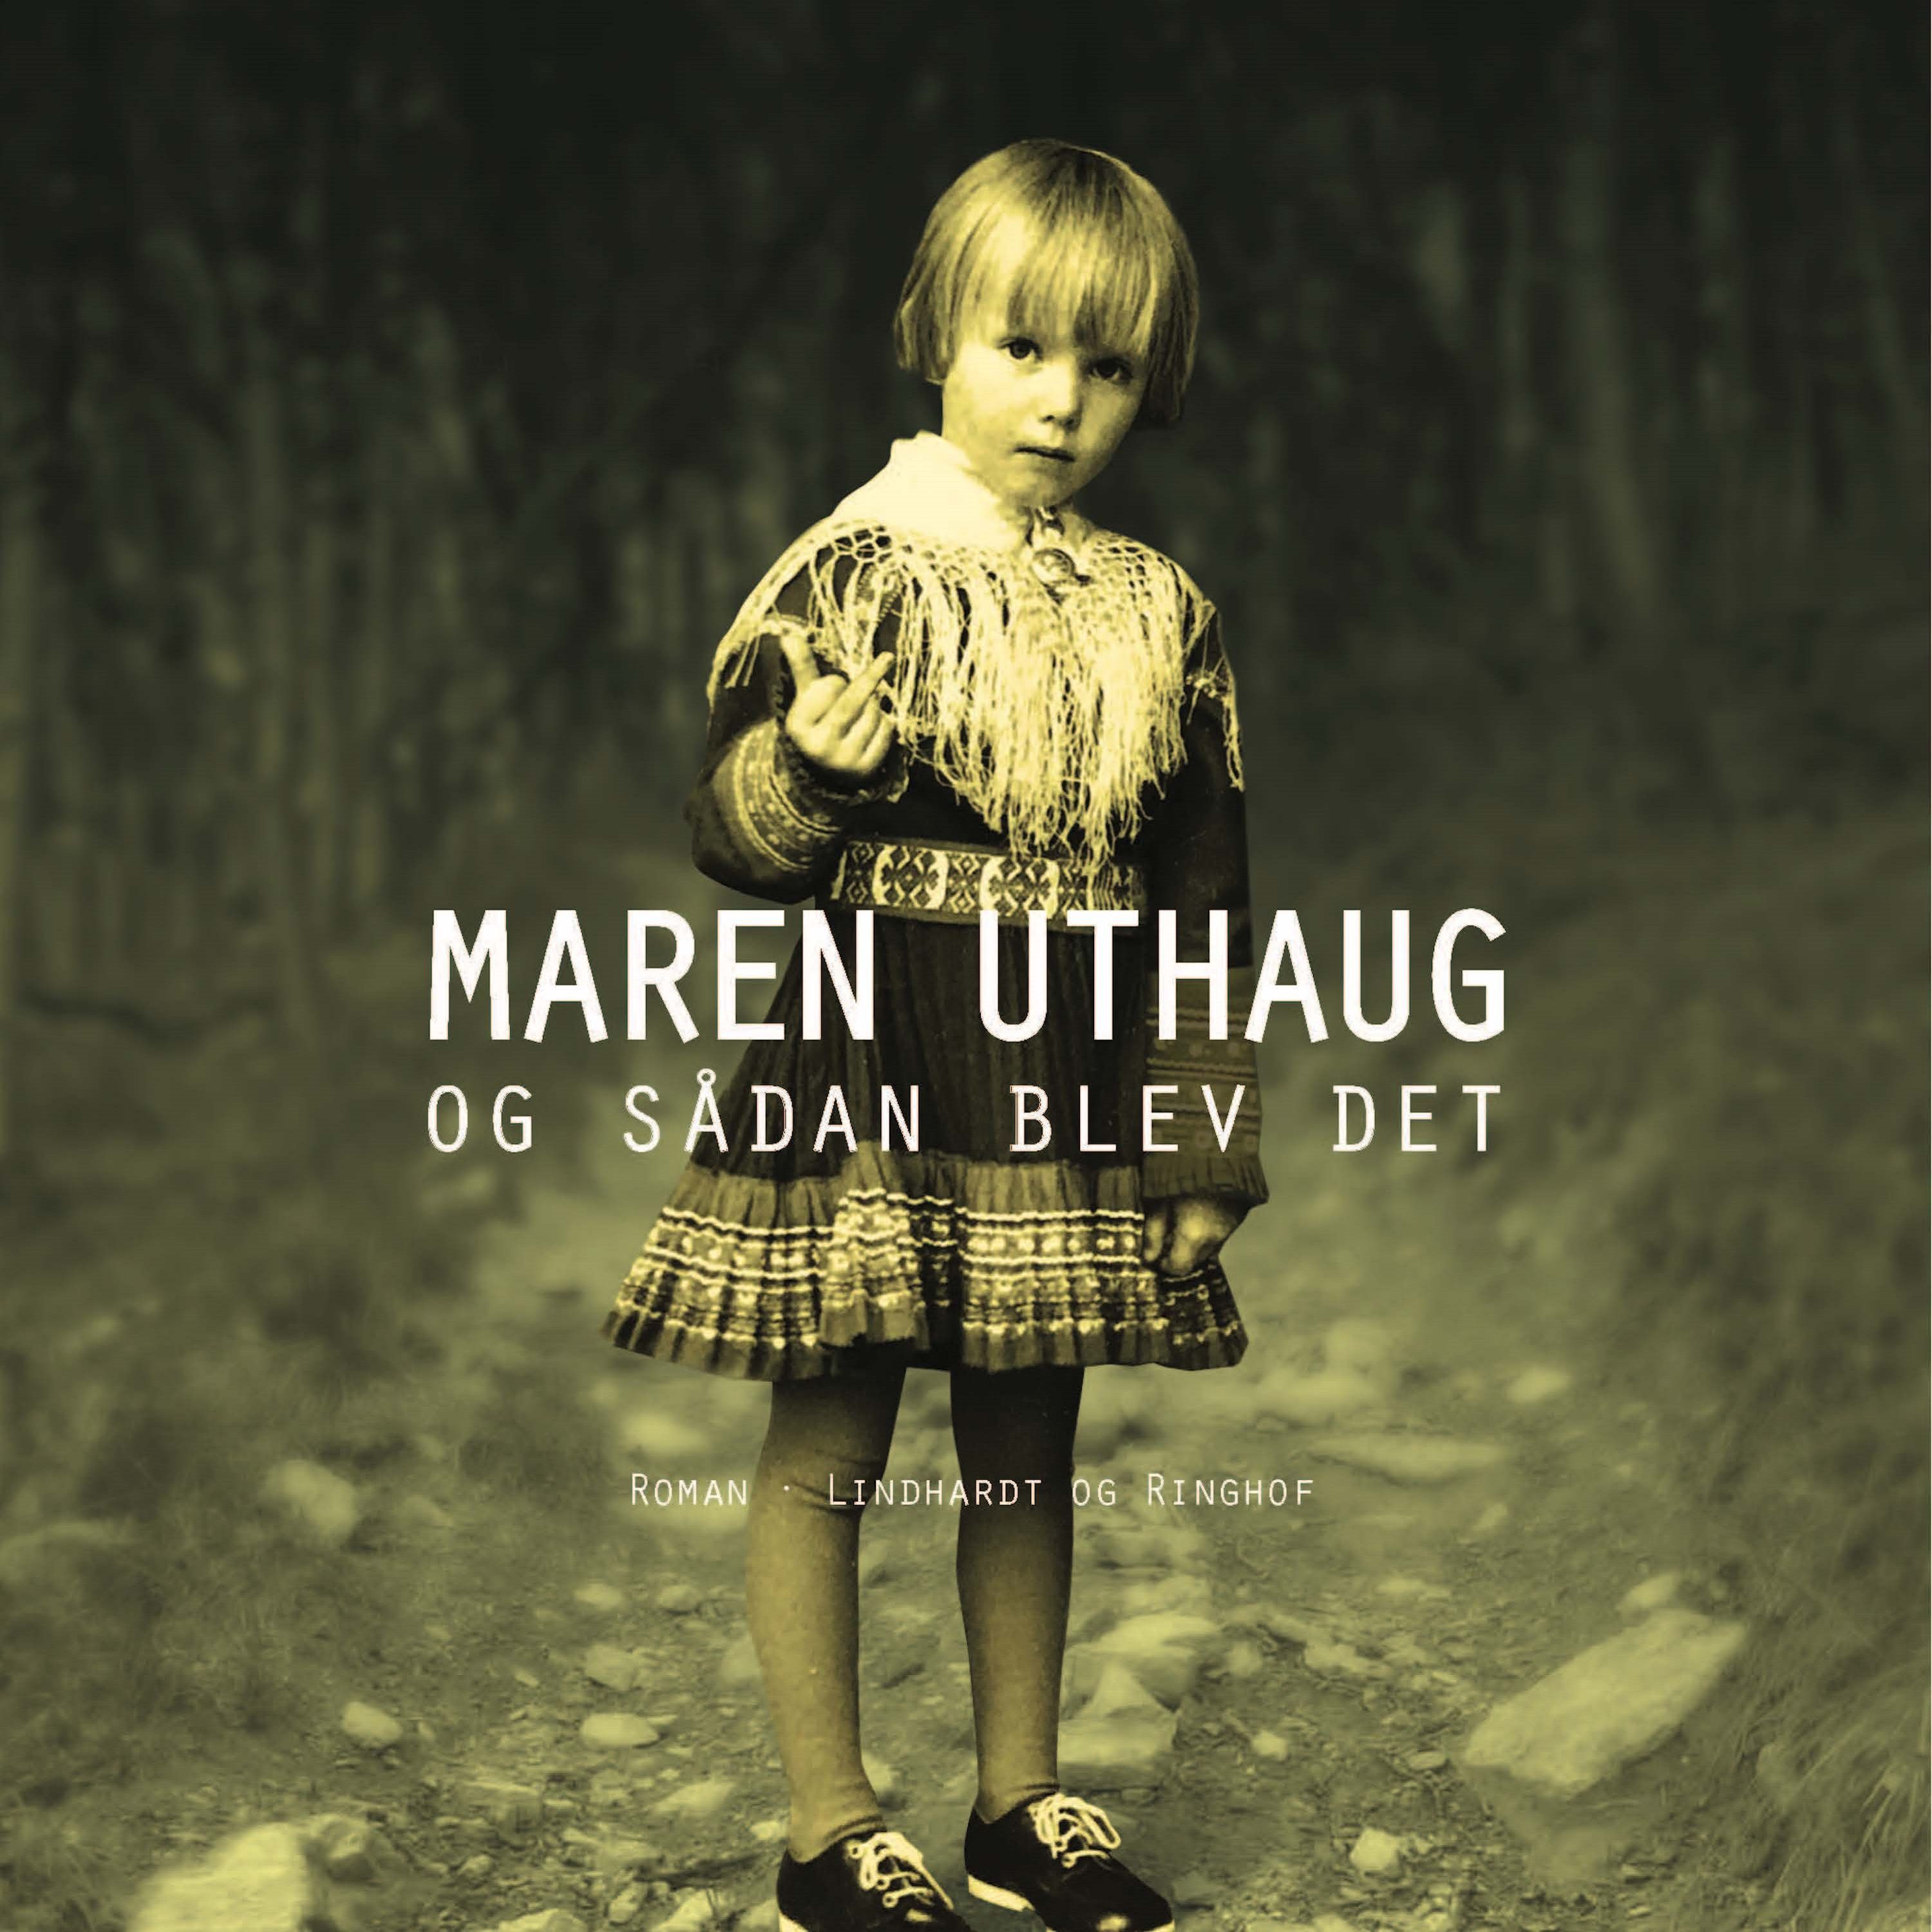 Og sådan blev det, ljudbok av Maren Uthaug